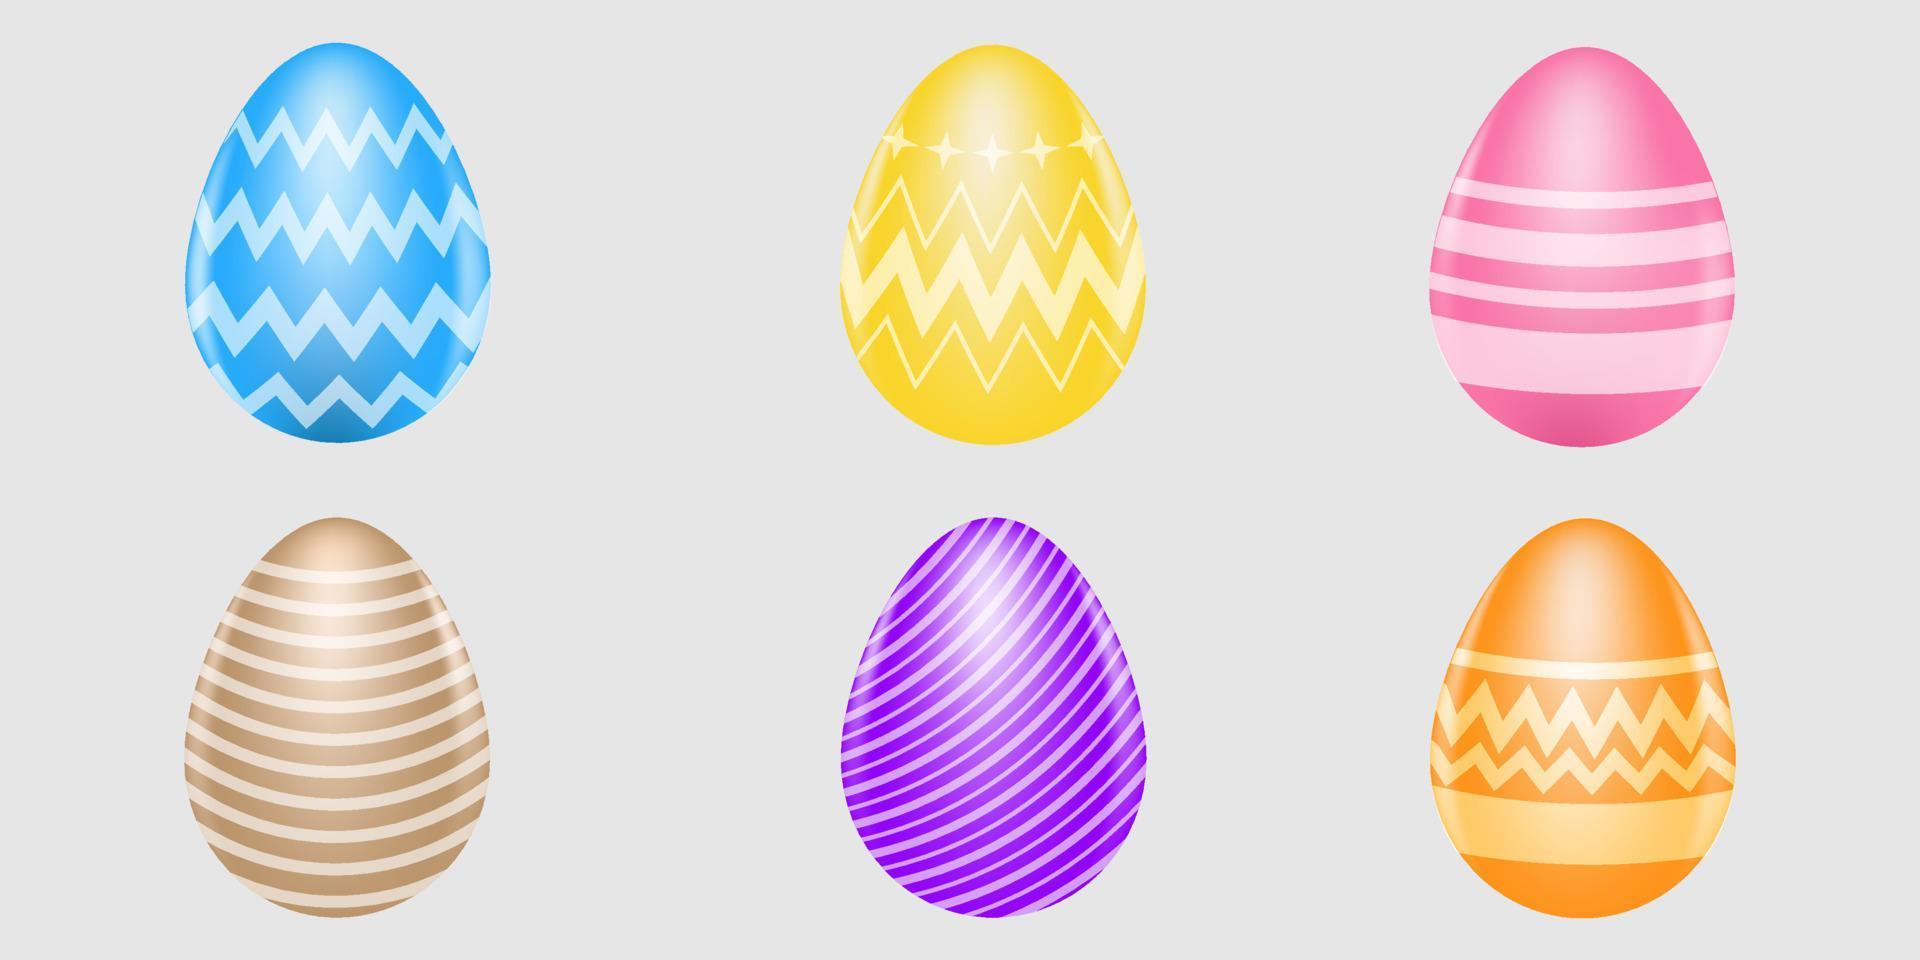 påsk ägg samling vektor illustration av annorlunda färger på en vit bakgrund